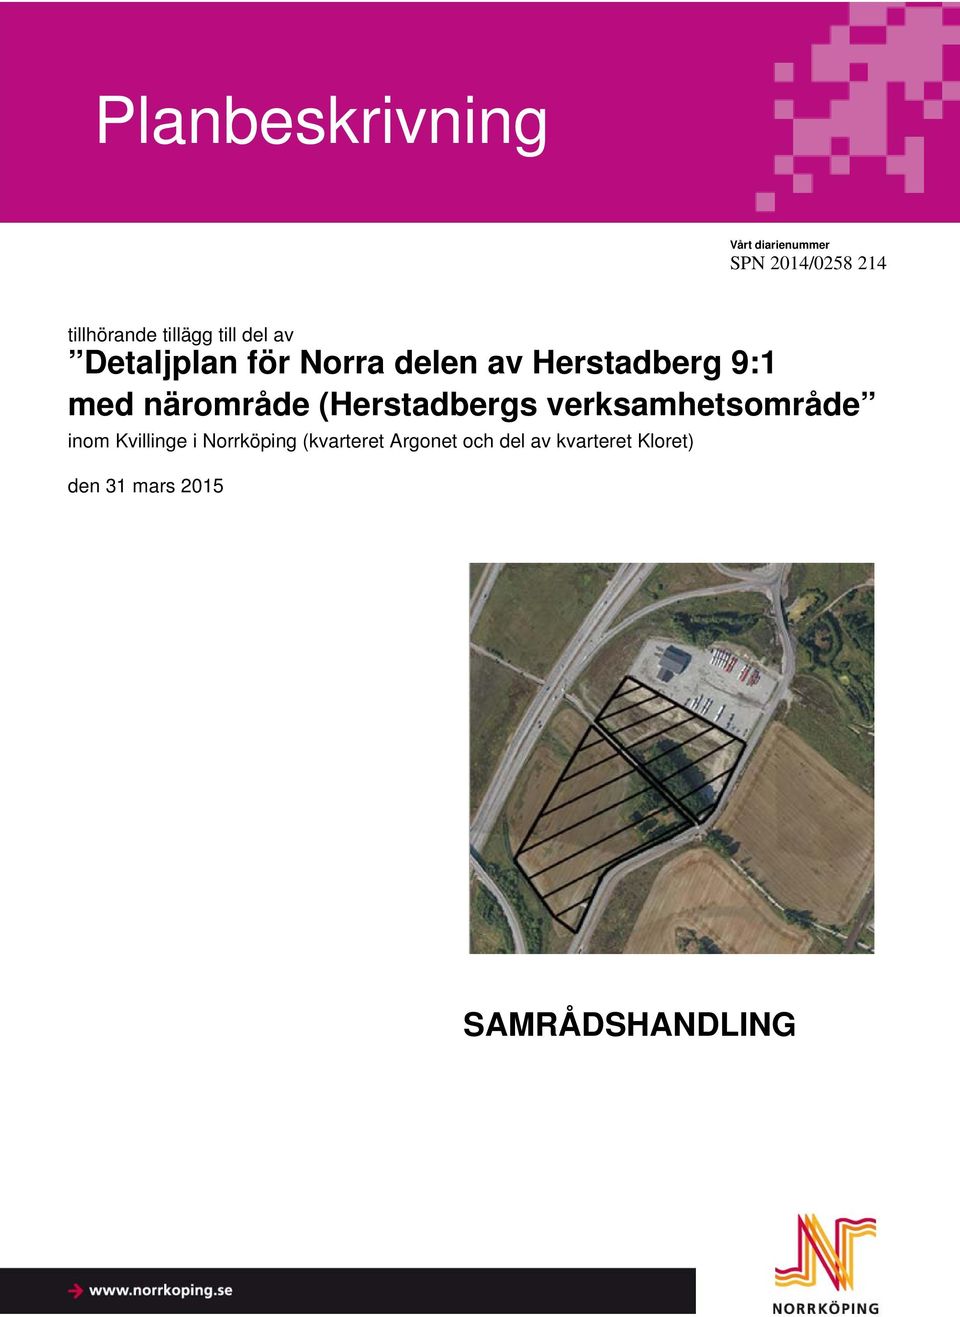 (Herstadbergs verksamhetsområde inom Kvillinge i Norrköping